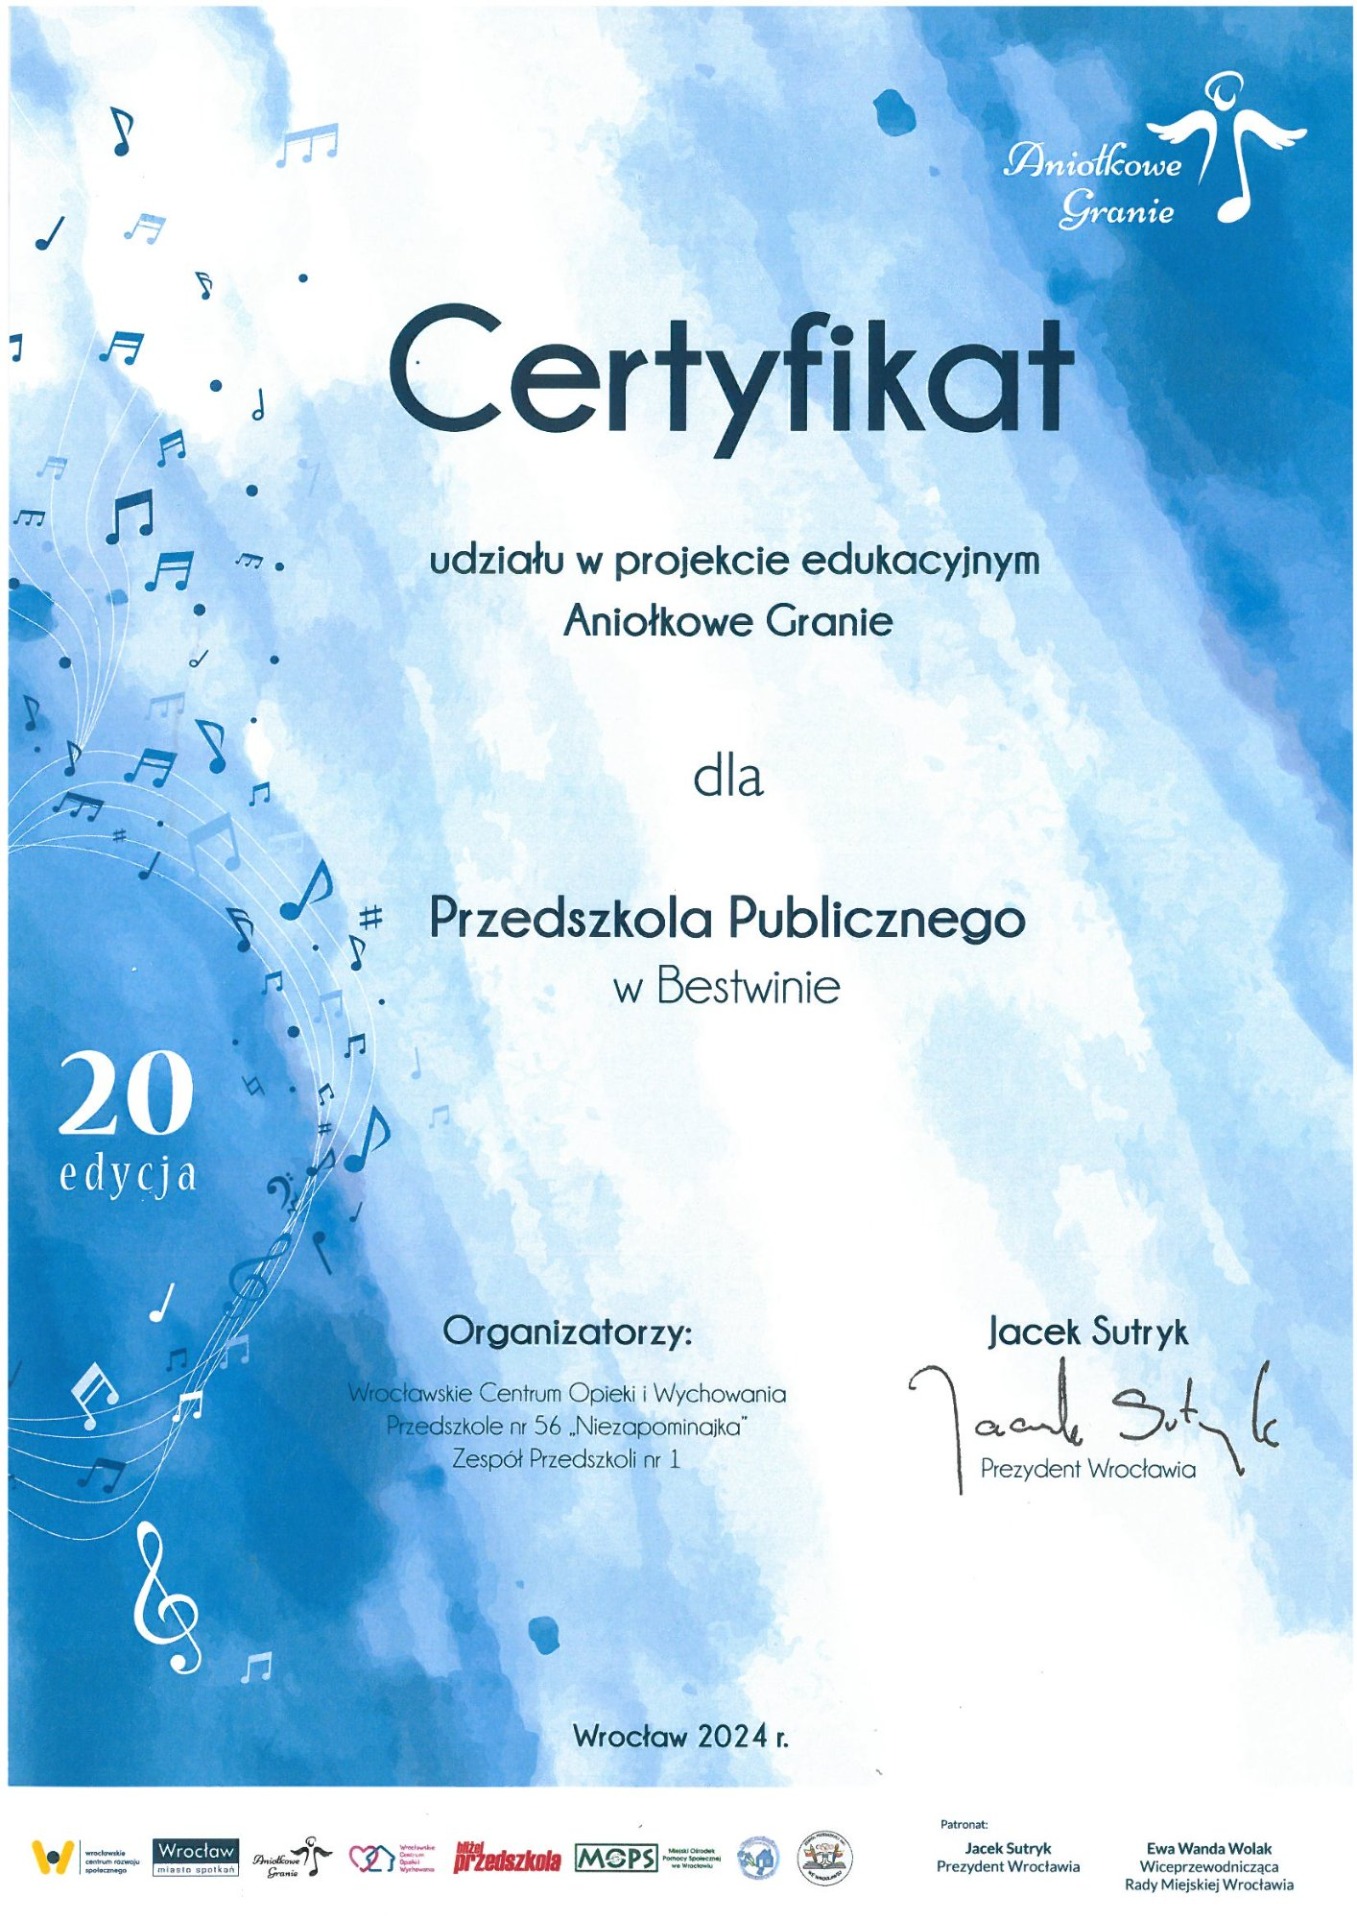 Certyfikat za udział w akcji Aniołkowe Granie dla przedszkola